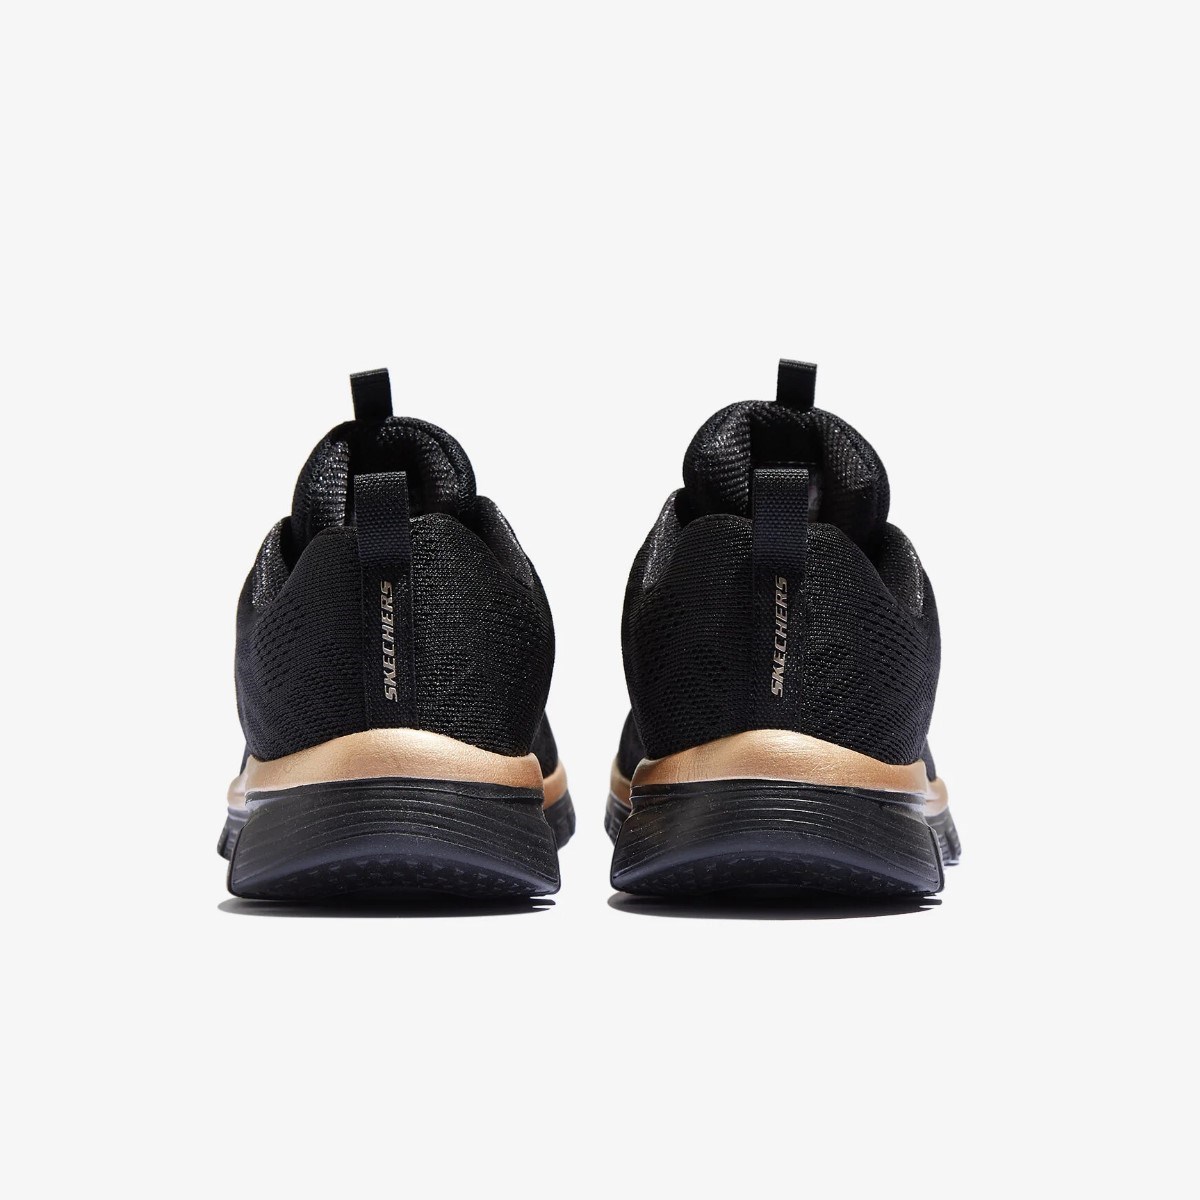 Skechers Kadın Ayakkabı 12615 Siyah/Pembe Altın